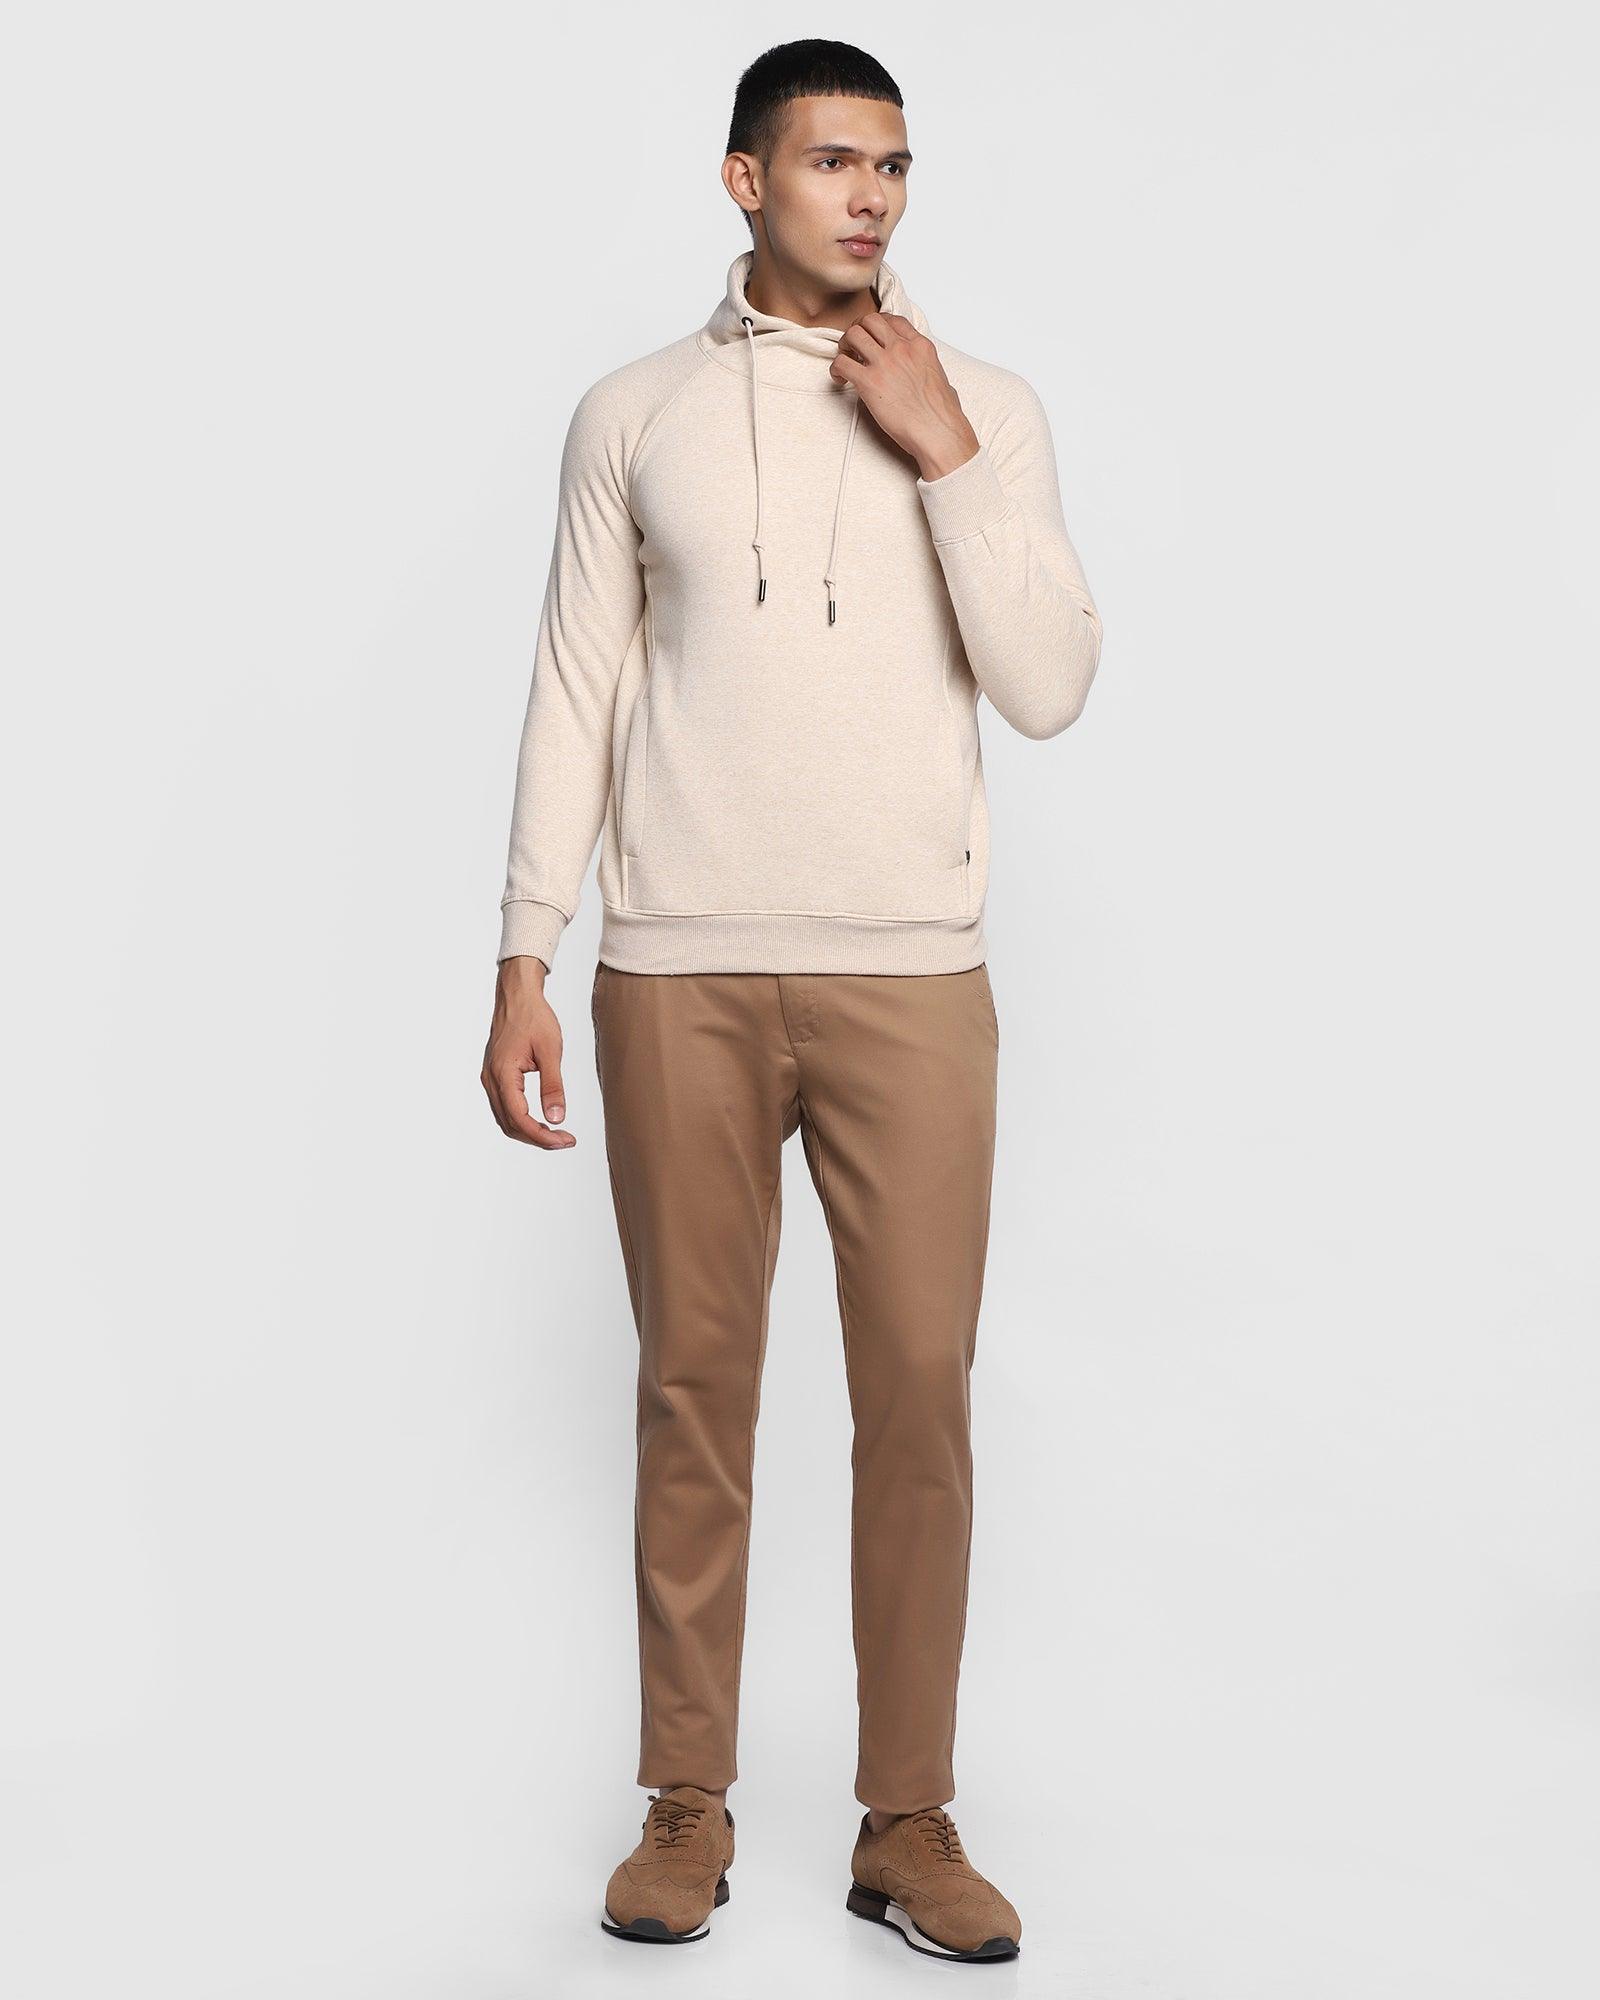 Stylized Collar Beige Solid Sweatshirt - Kang